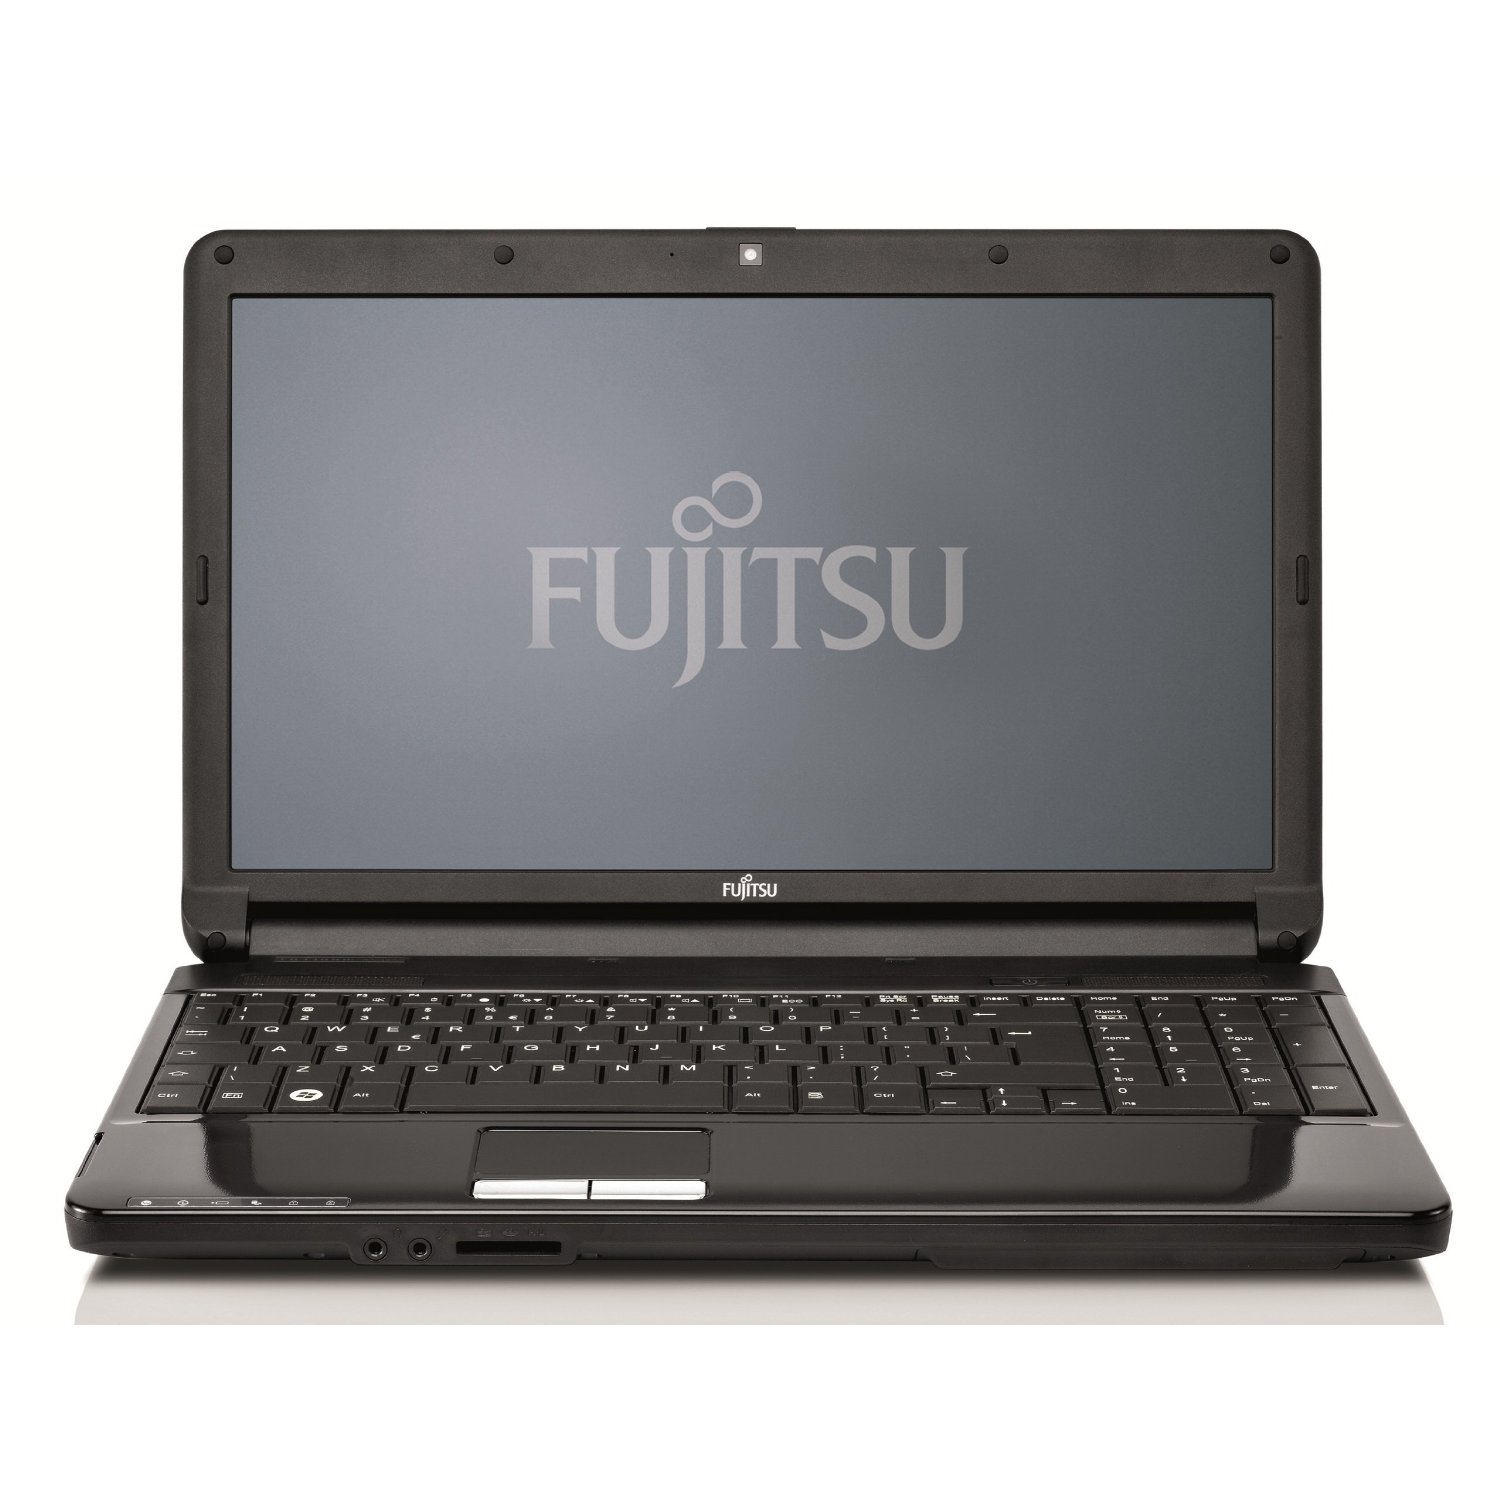 Fujitsu Lifebook Ah530 Drivers